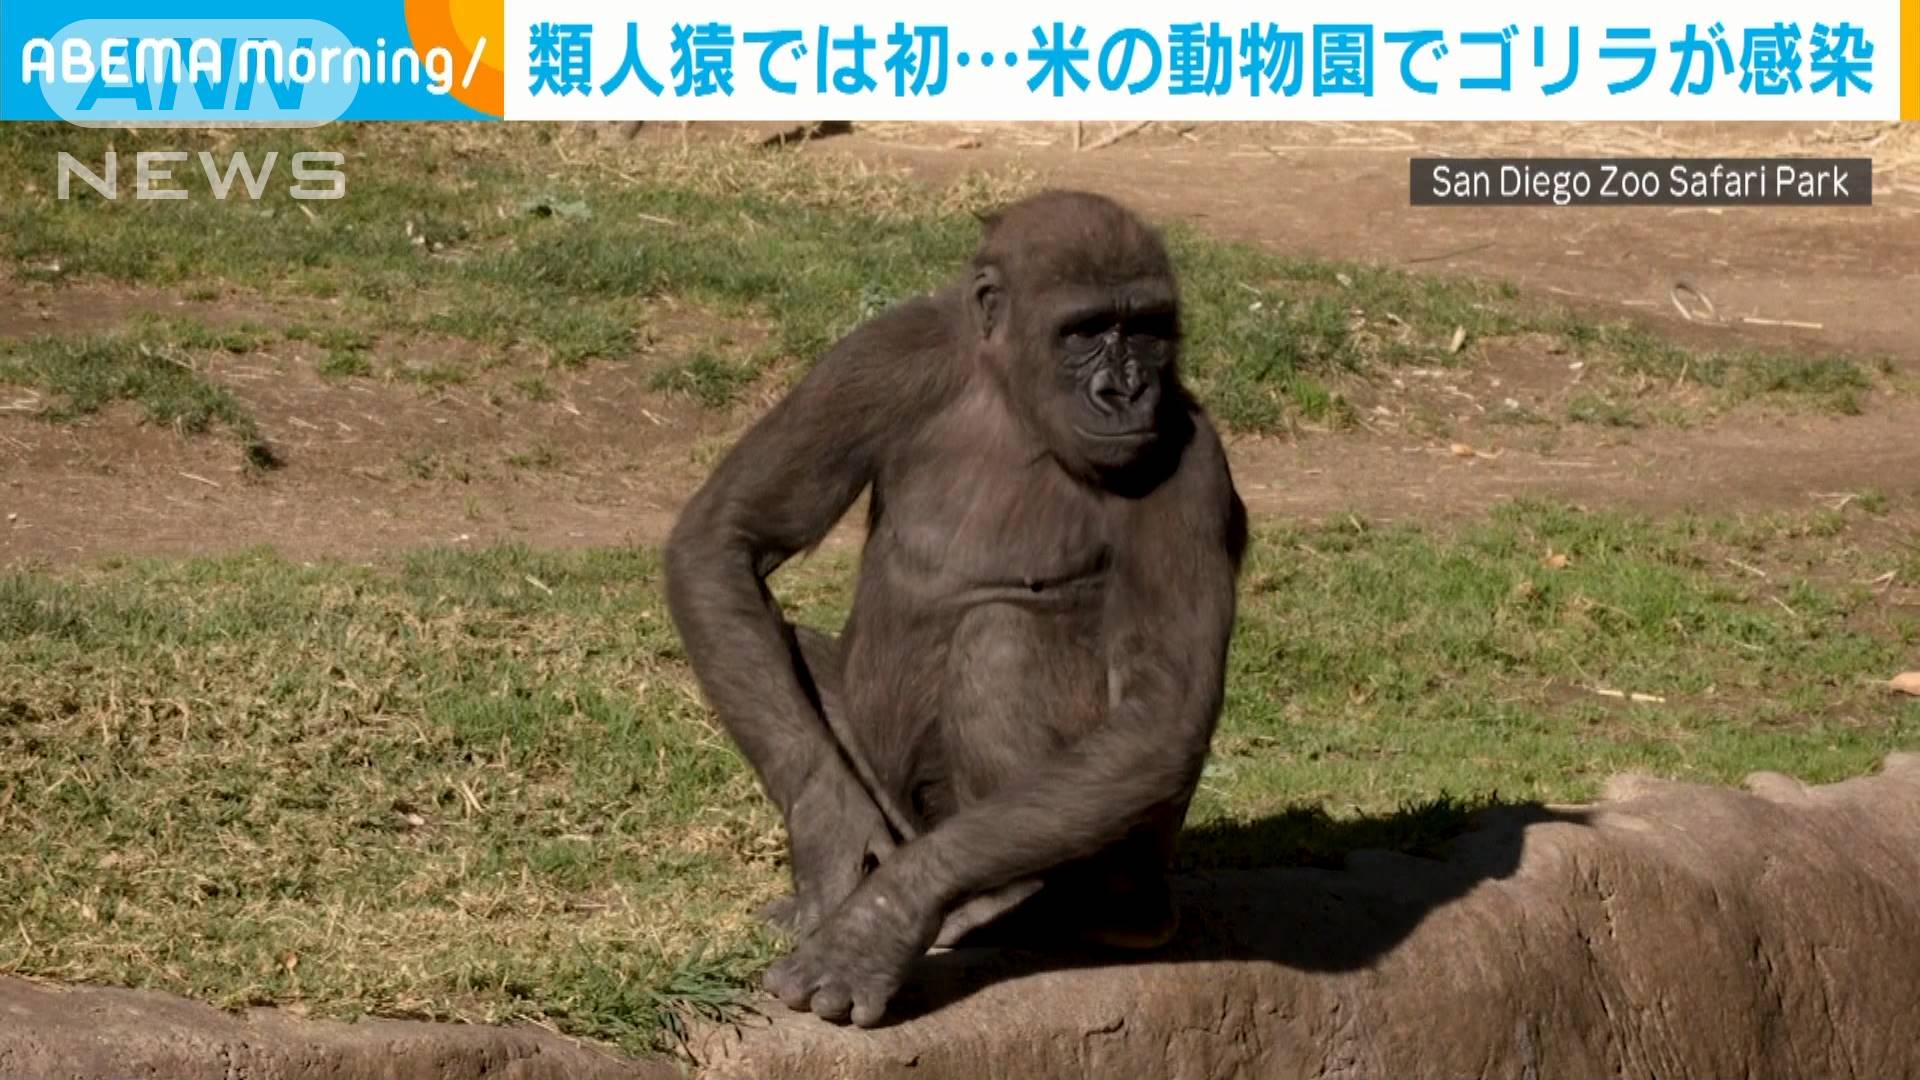 ゴリラも感染 類人猿で初 米動物園の2頭が陽性 テレ朝news テレビ朝日のニュースサイト